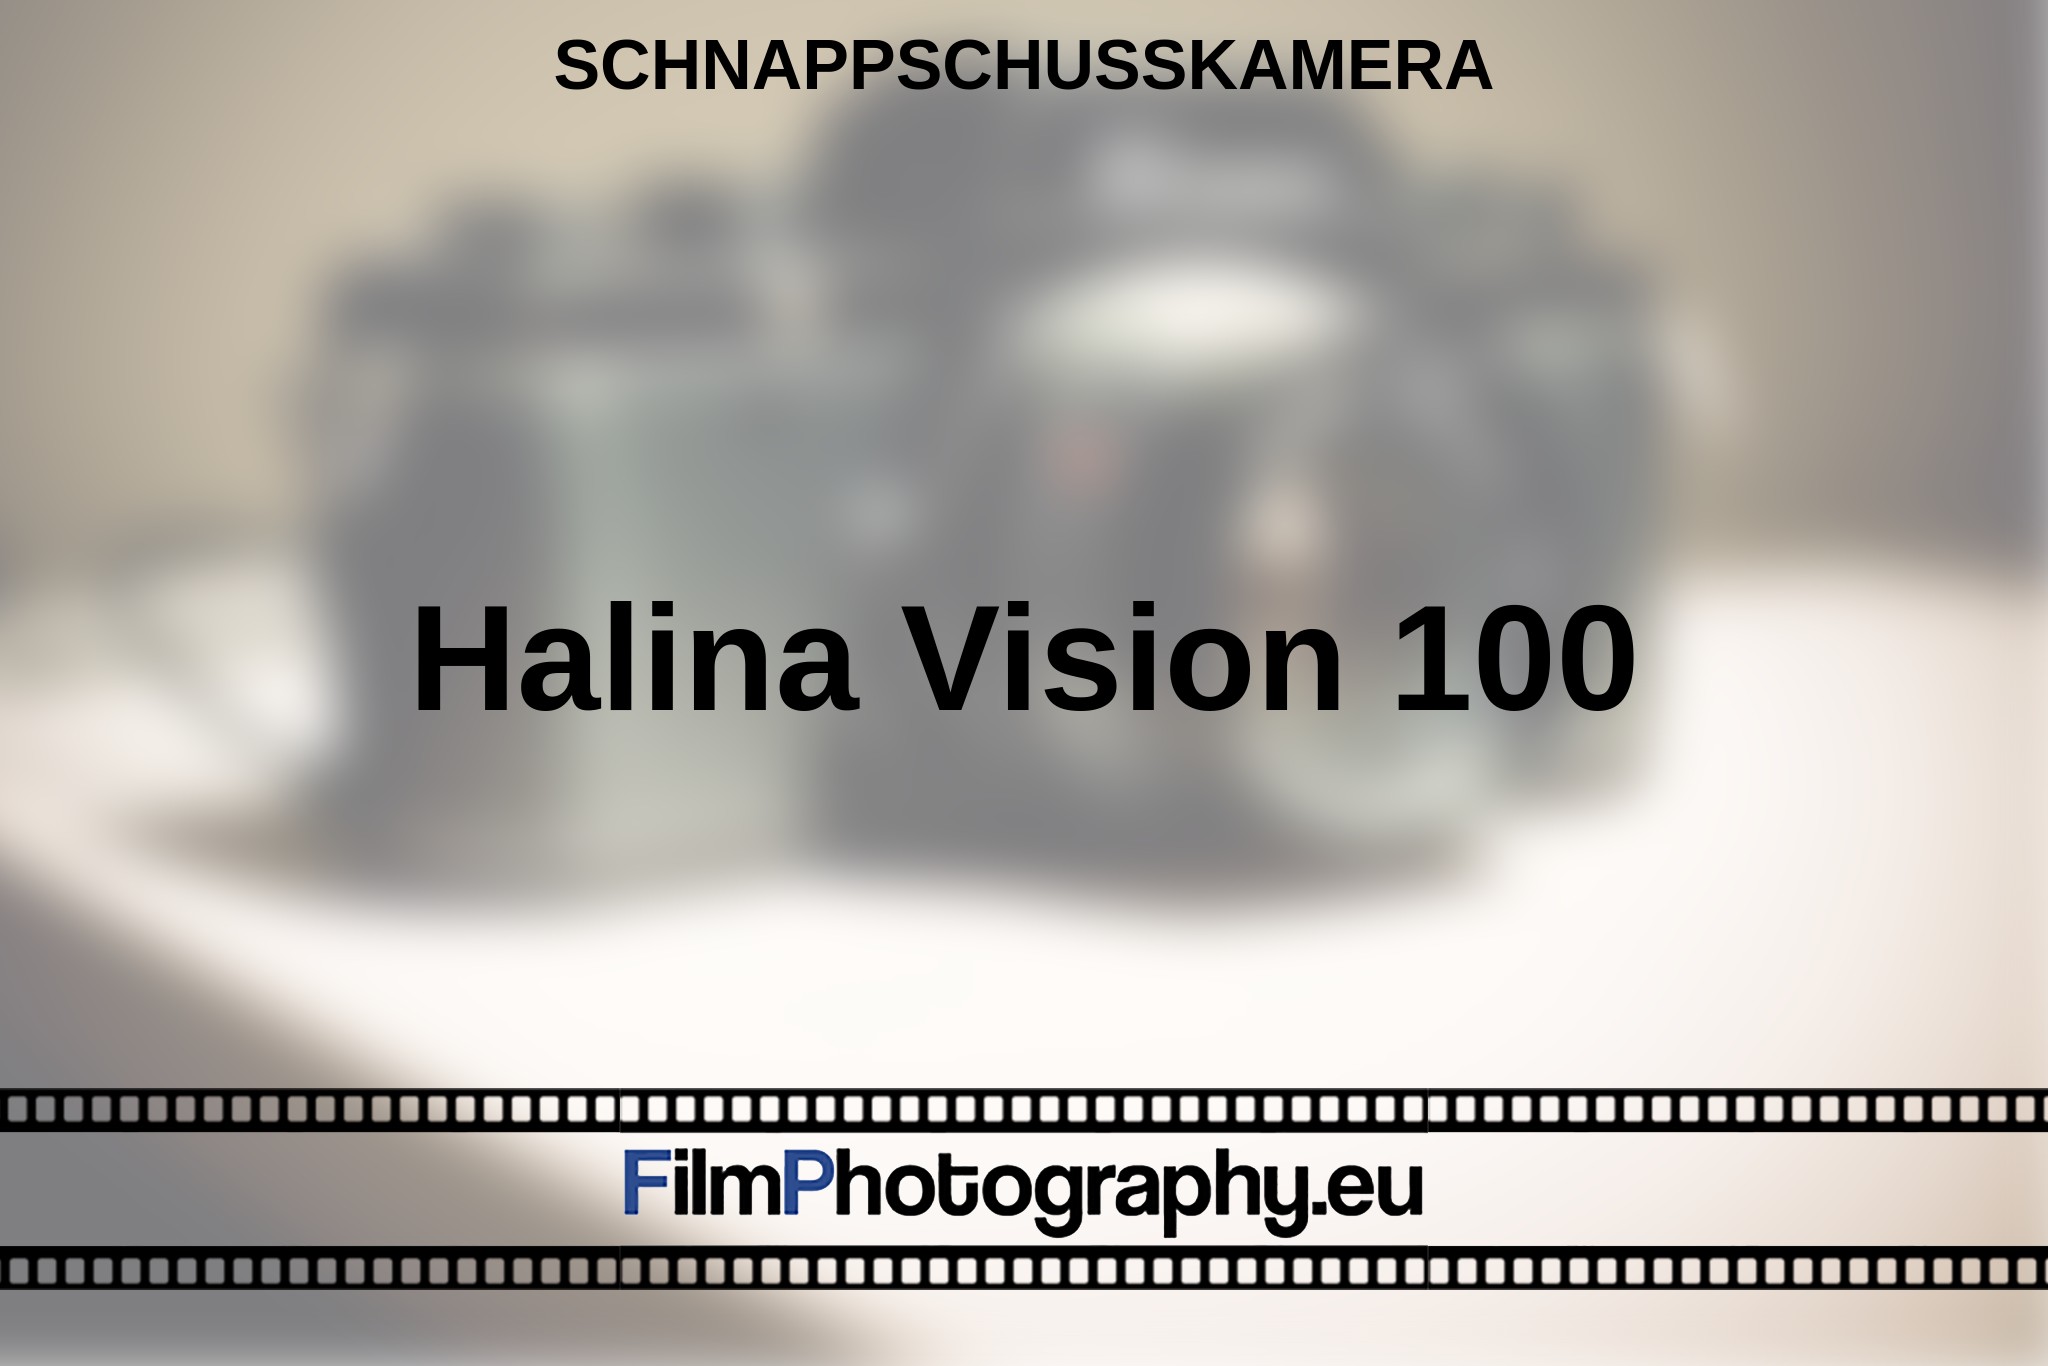 halina-vision-100-schnappschusskamera-bnv.jpg